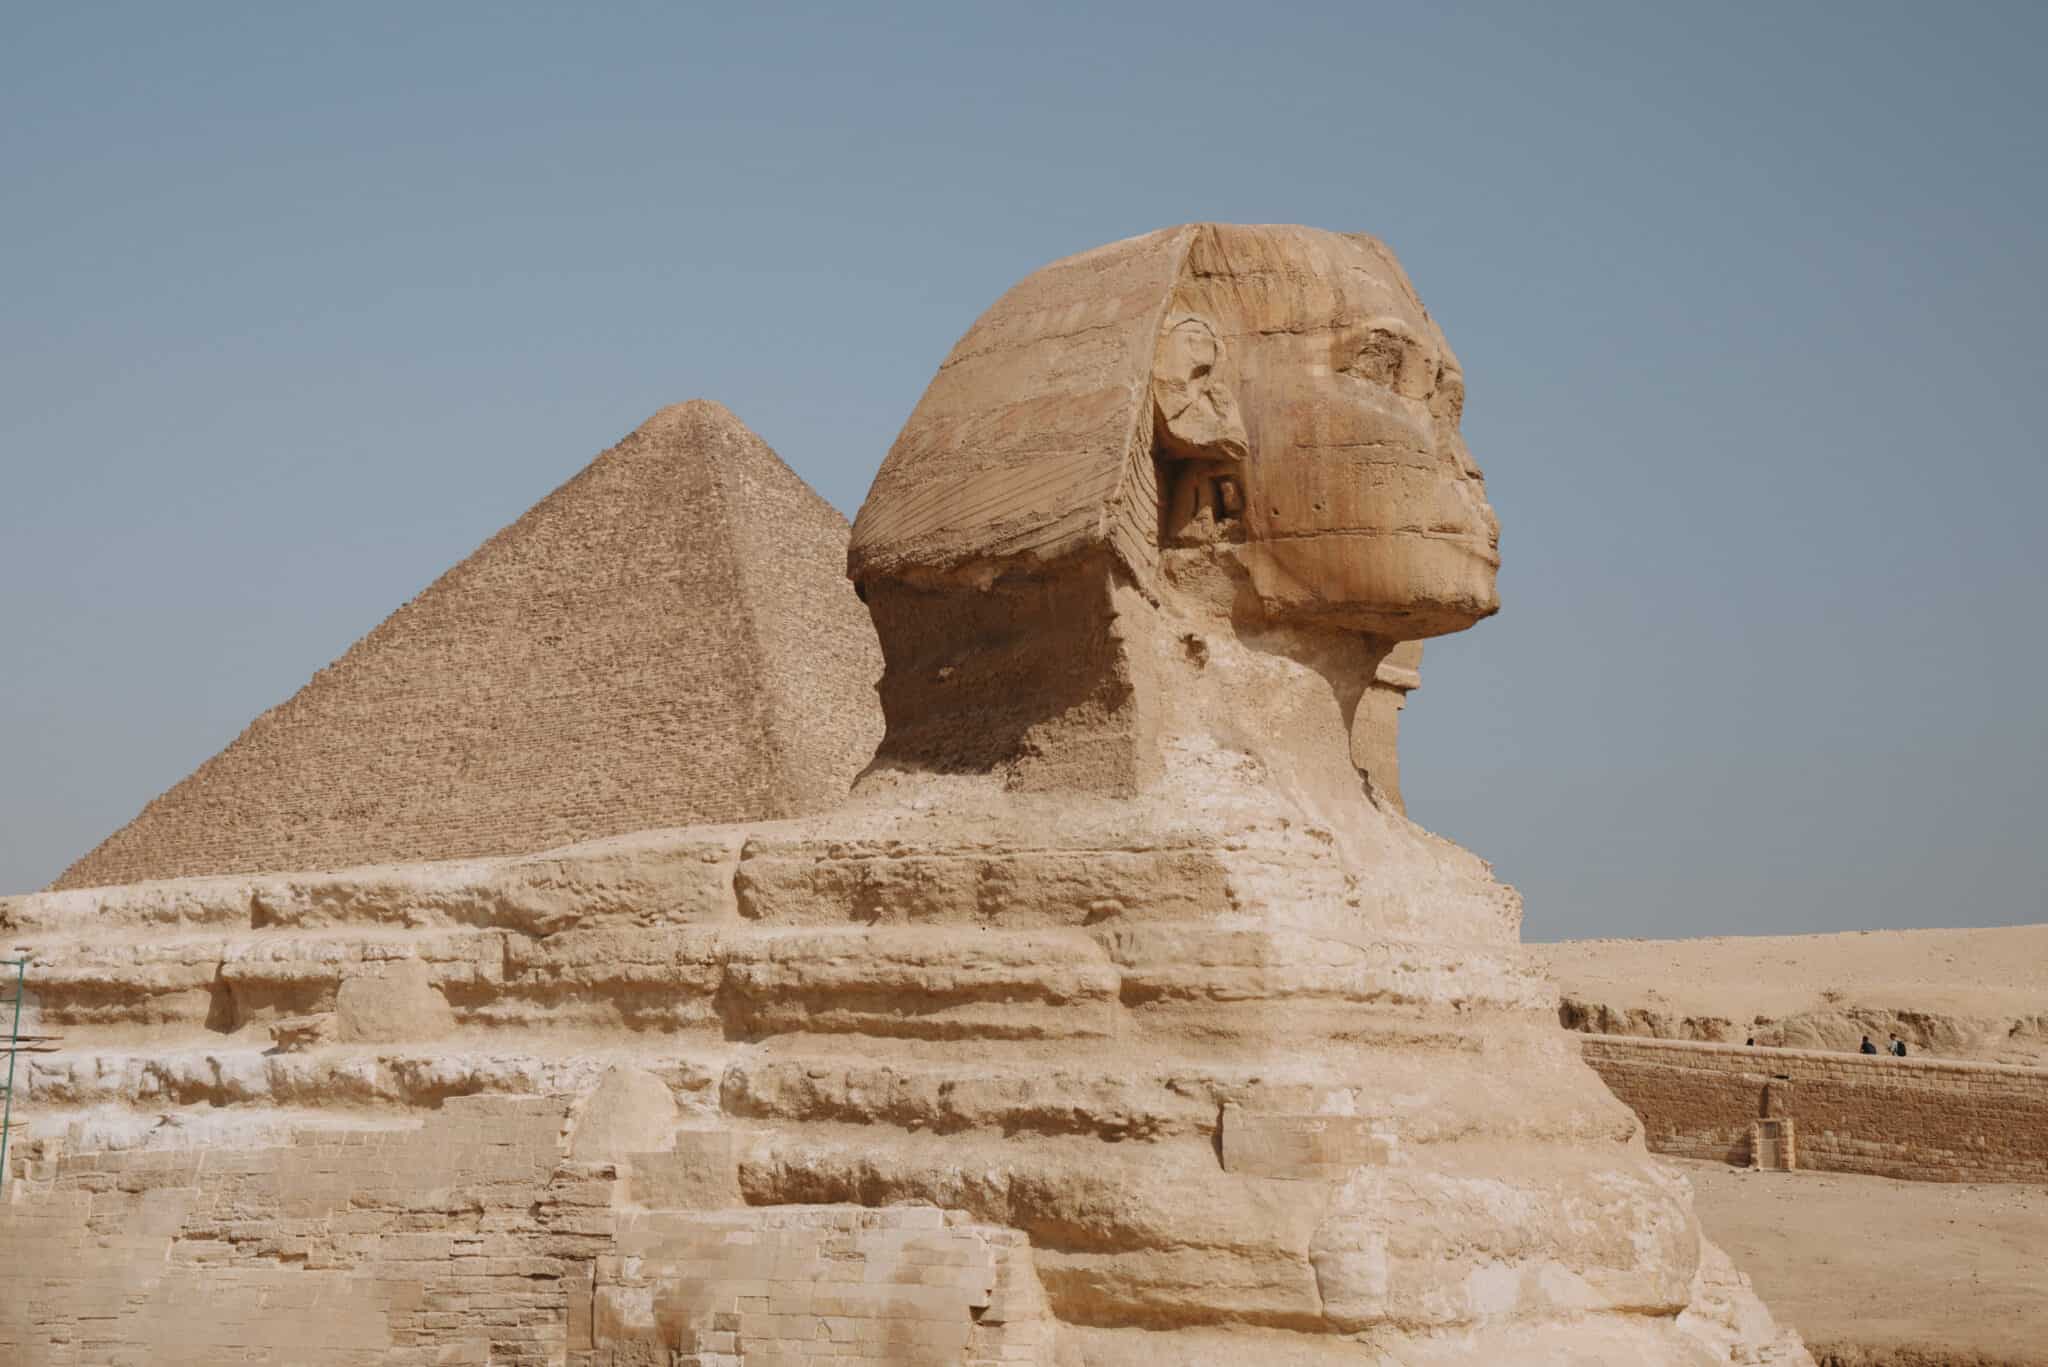 Sphinx, Pyramids of Giza, Cairo